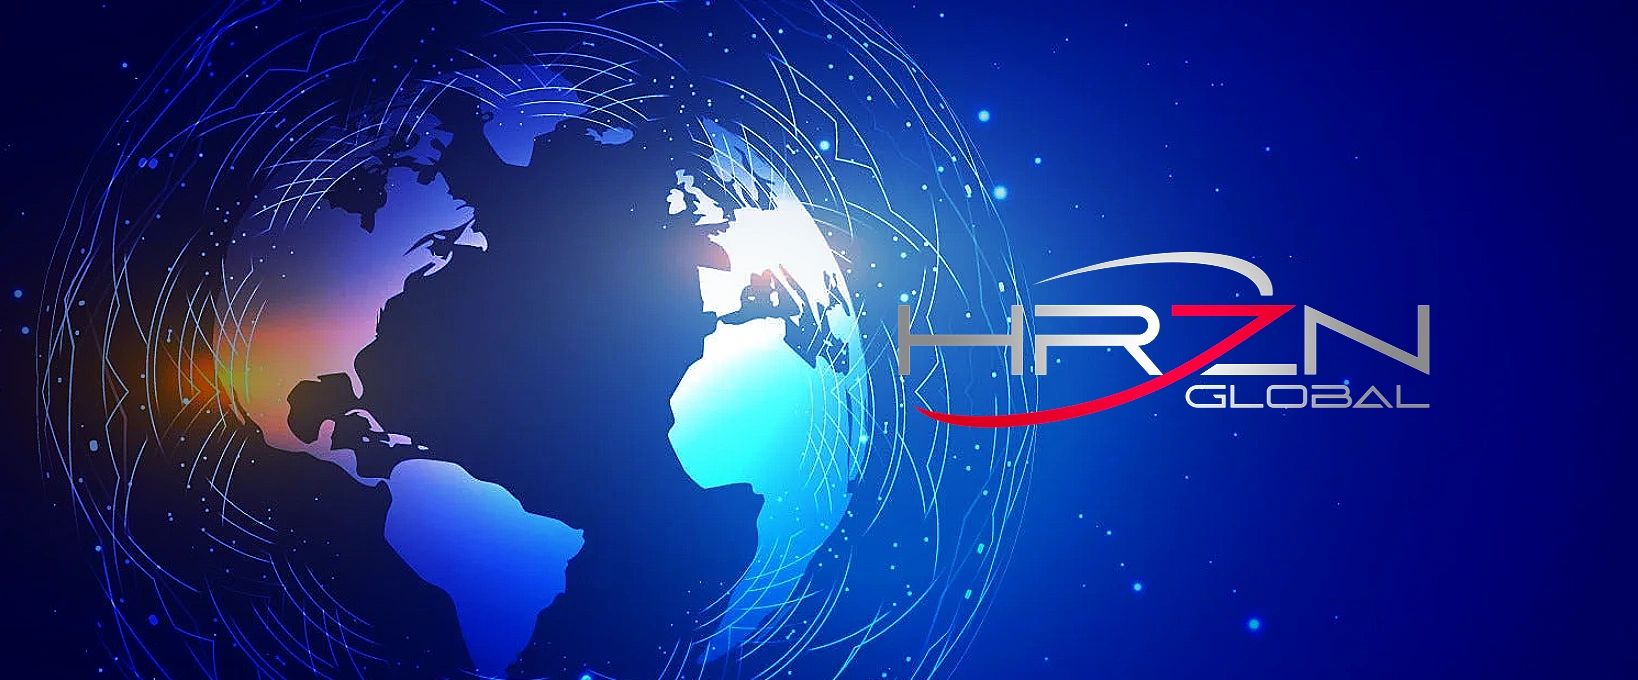 HRZN Global LLC